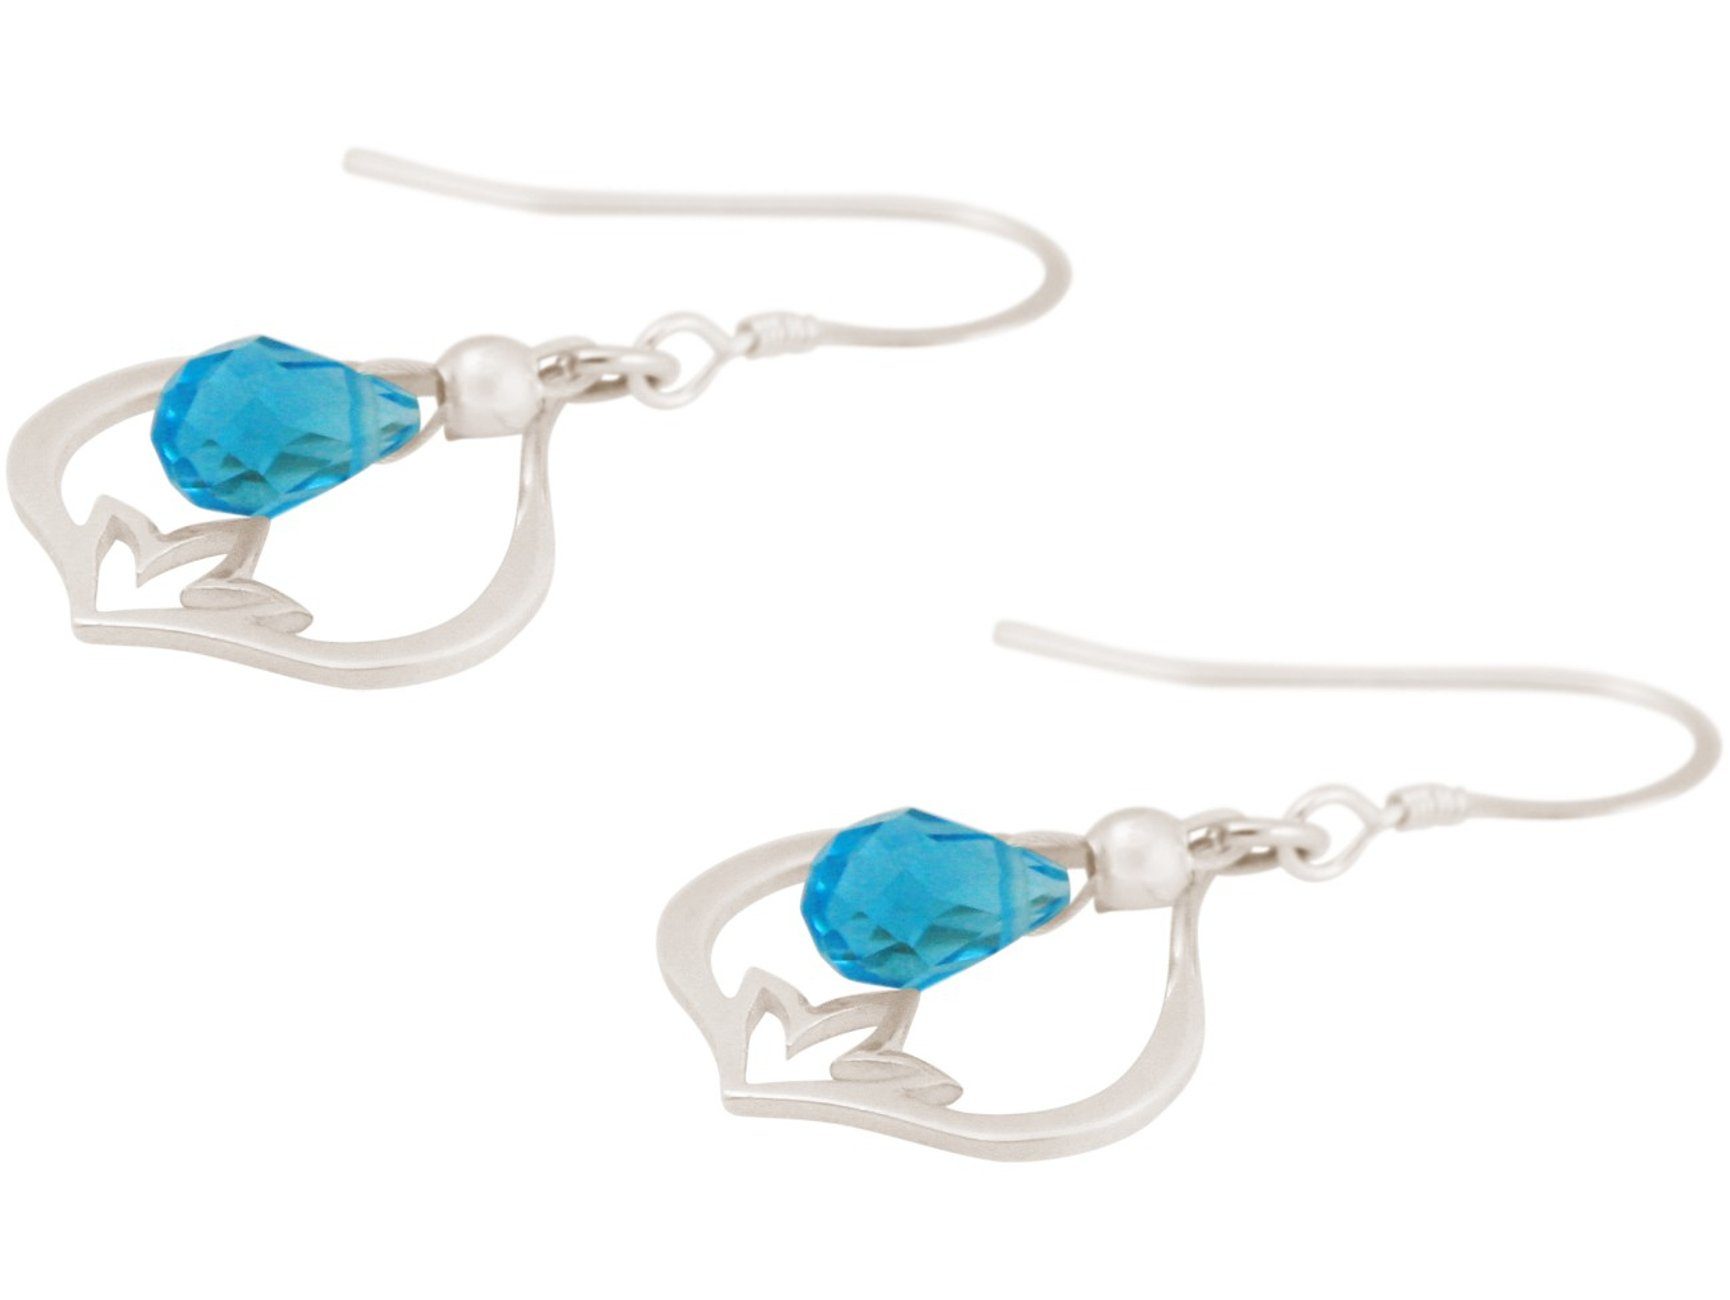 Damen Schmuck Gemshine Paar Ohrhänger Lotusblume und Blautopas Quarz Tropfen, Made in Spain